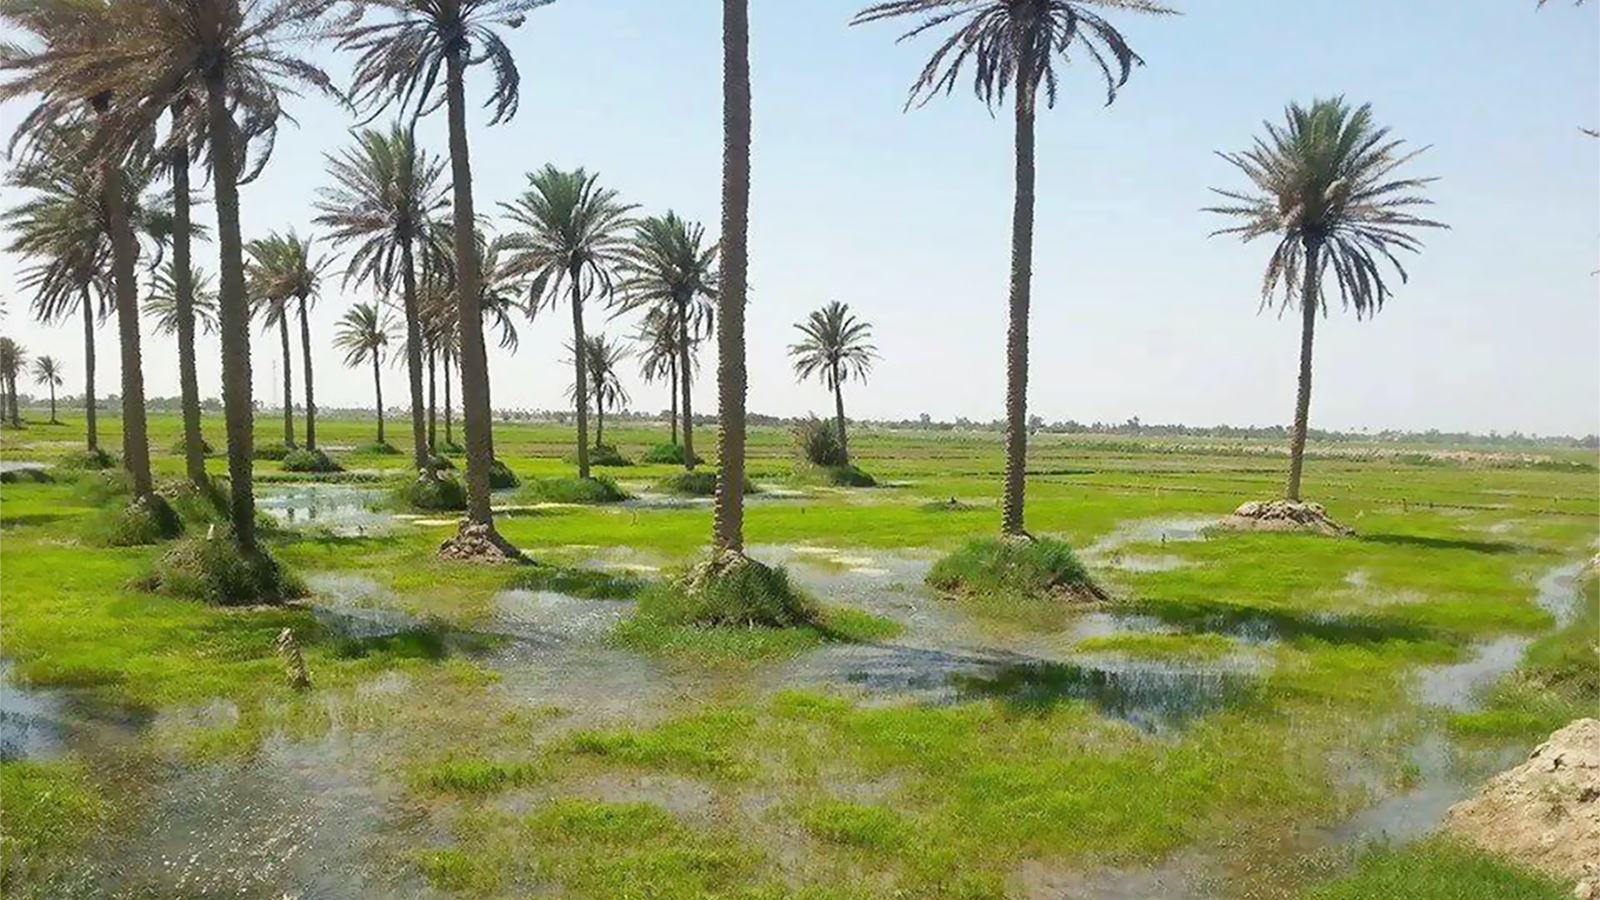 ‪العراق يسعى إلى جذب الأموال والتكنولوجيا لدعم قطاع الزراعة‬ العراق يسعى إلى جذب الأموال والتكنولوجيا لدعم قطاع الزراعة (الجزيرة)